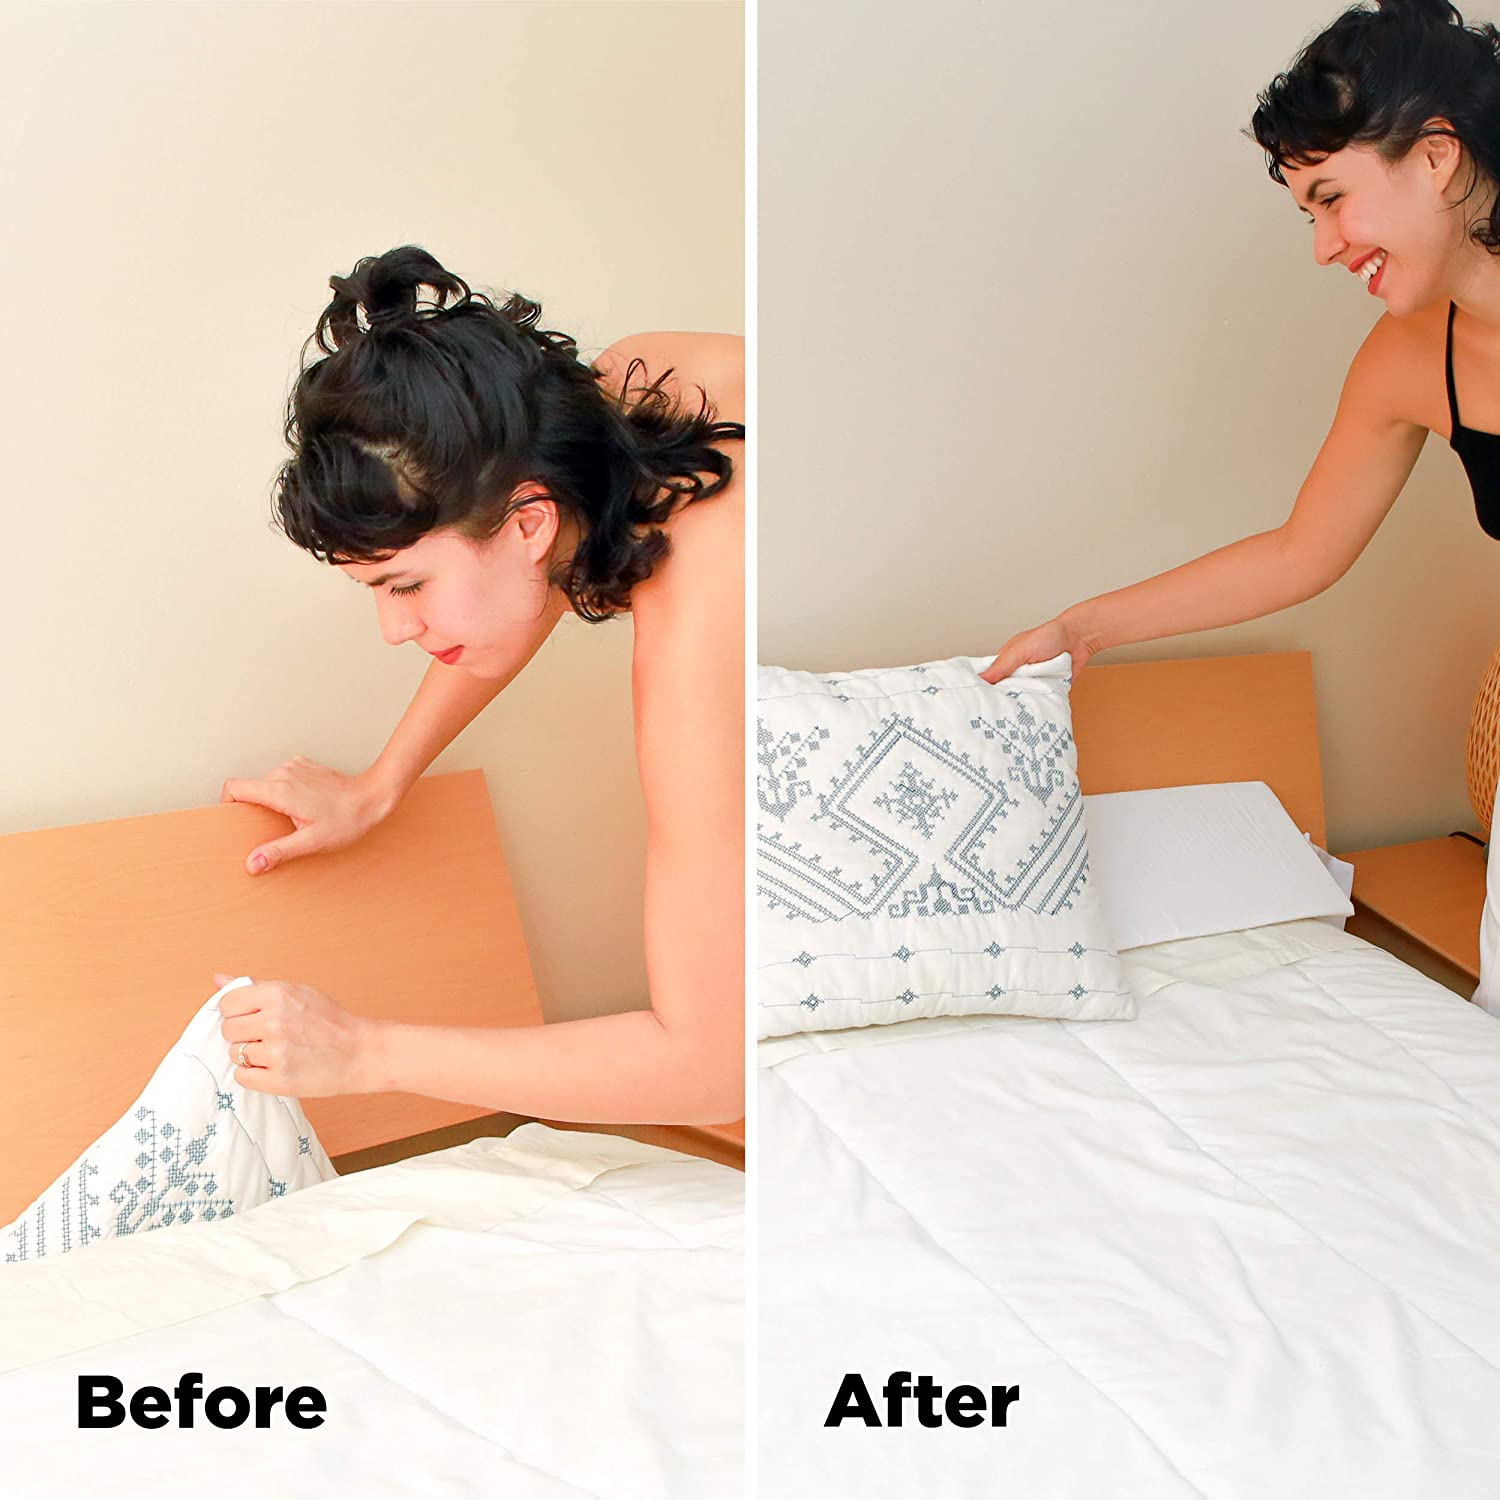 Close a sleigh bed mattress gap with a mattress wedge